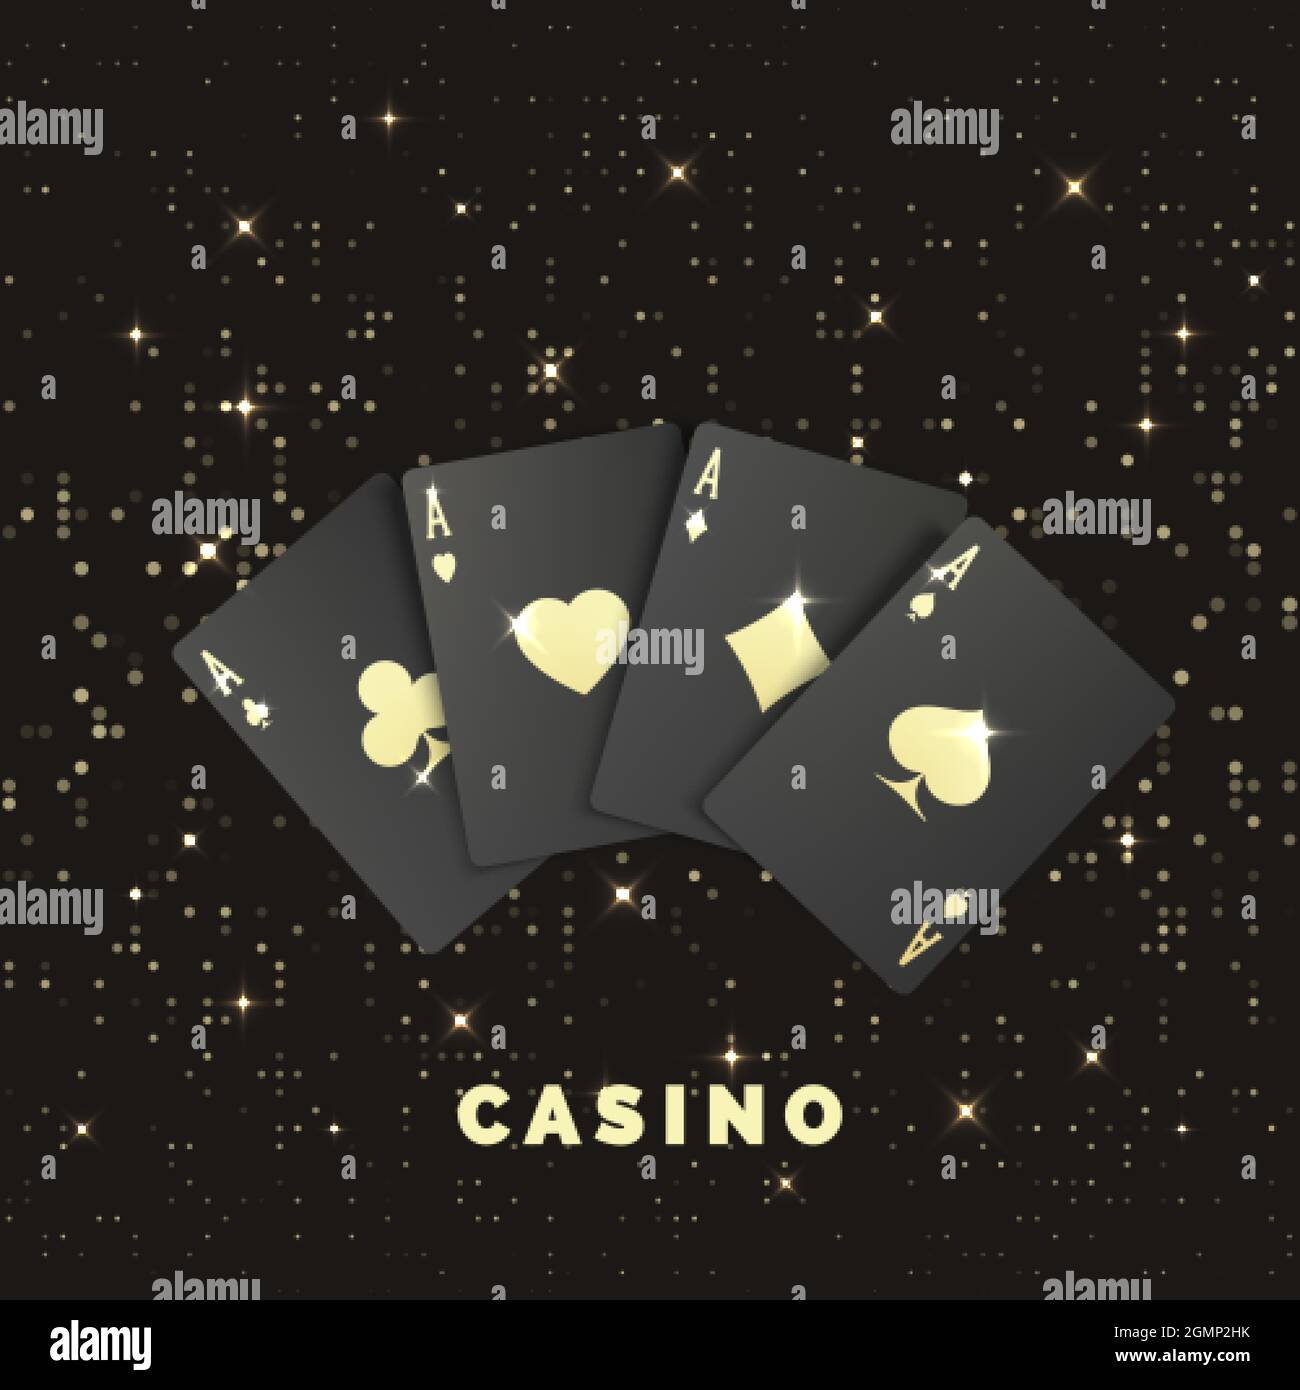 Vier schwarze Poker-Karten mit goldenem Etikett. Quads oder Vierling von Ass. Casino-Banner oder -Poster im königlichen Stil. Vektorgrafik Stock Vektor